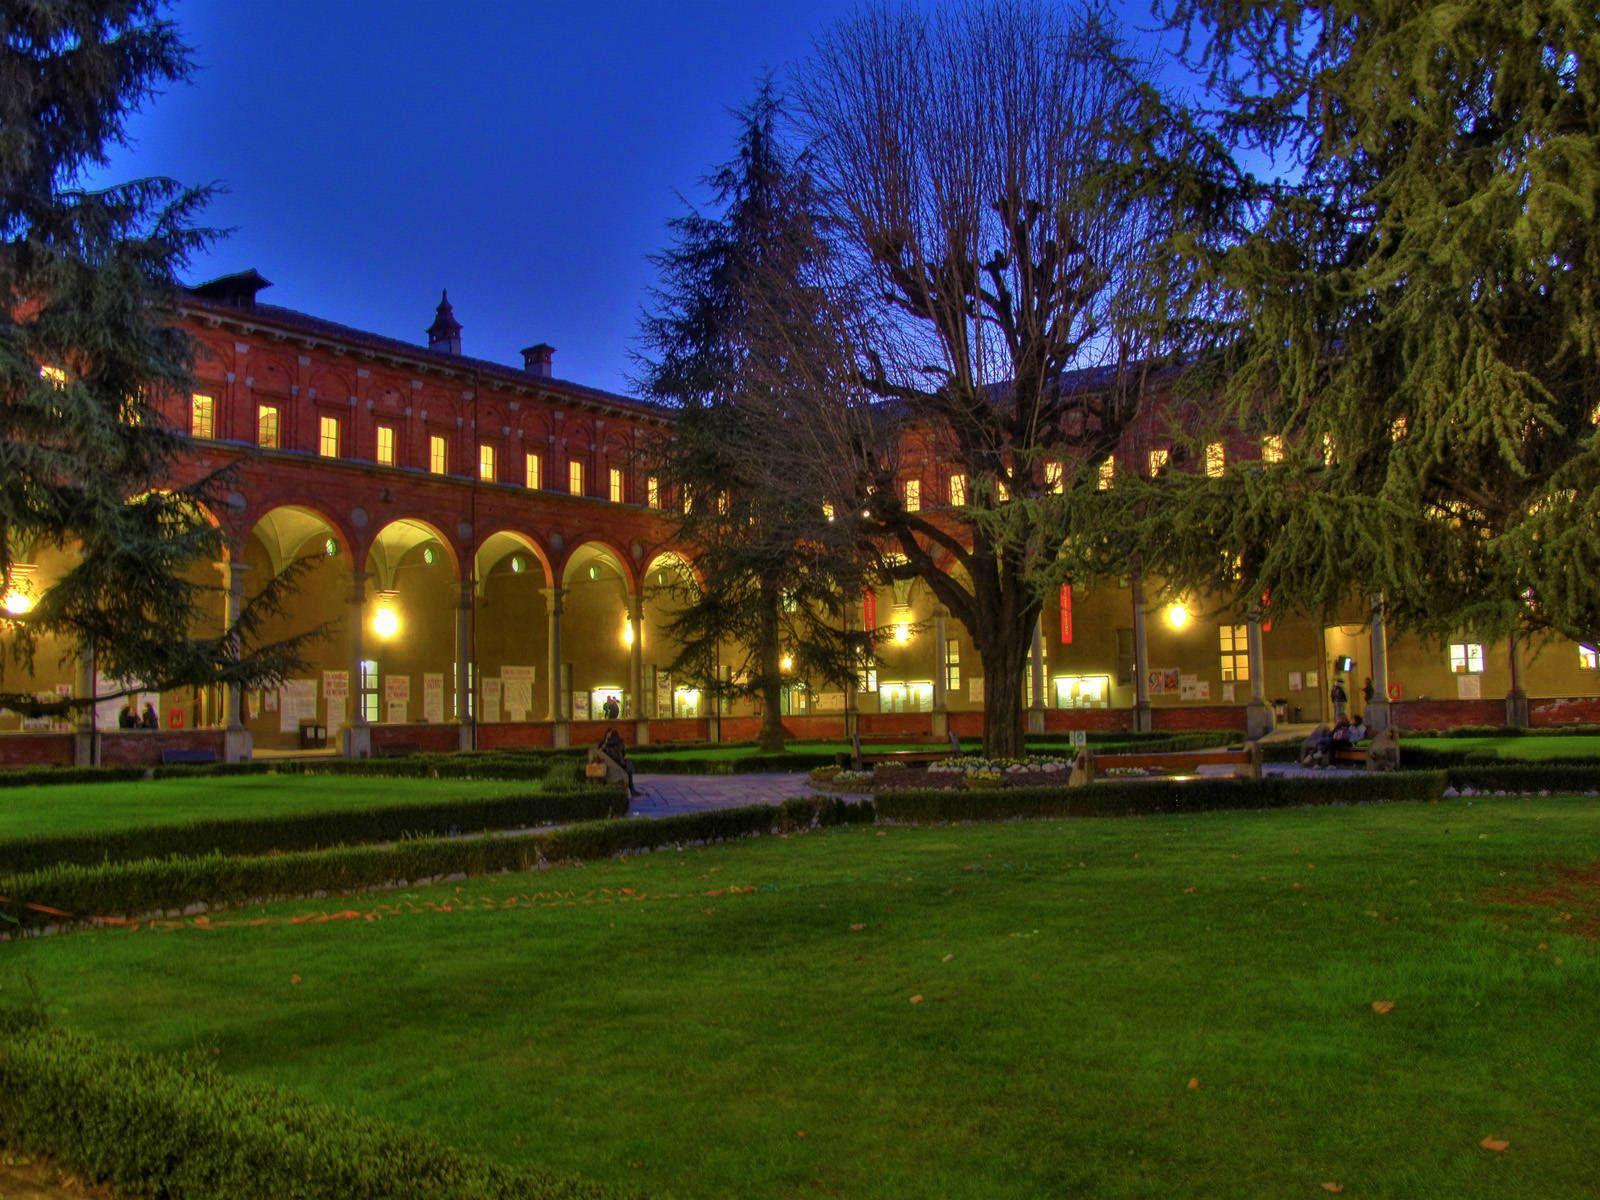 Catholic University campus